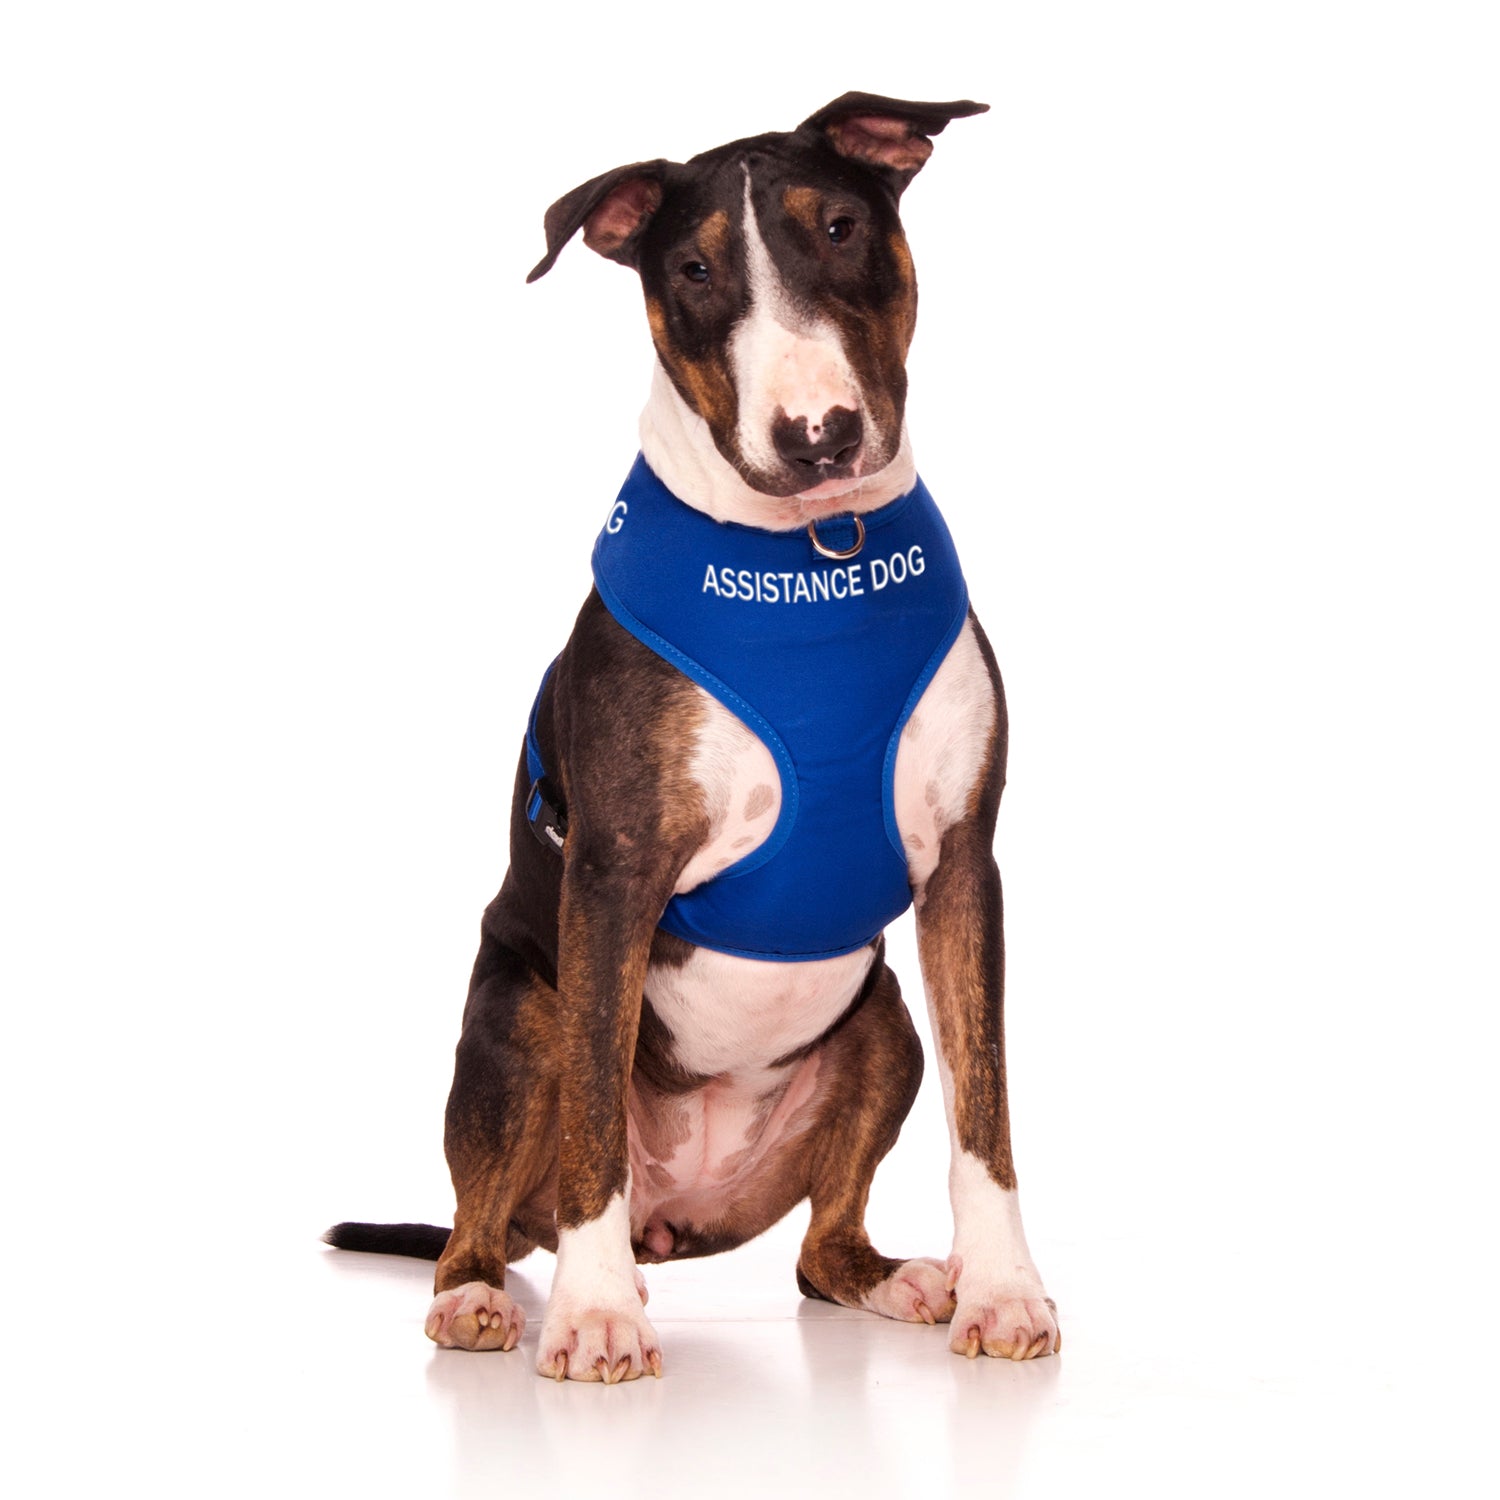 Dexil Friendly Dog Collars ASSISTANCE DOG Large adjustable Vest Harness